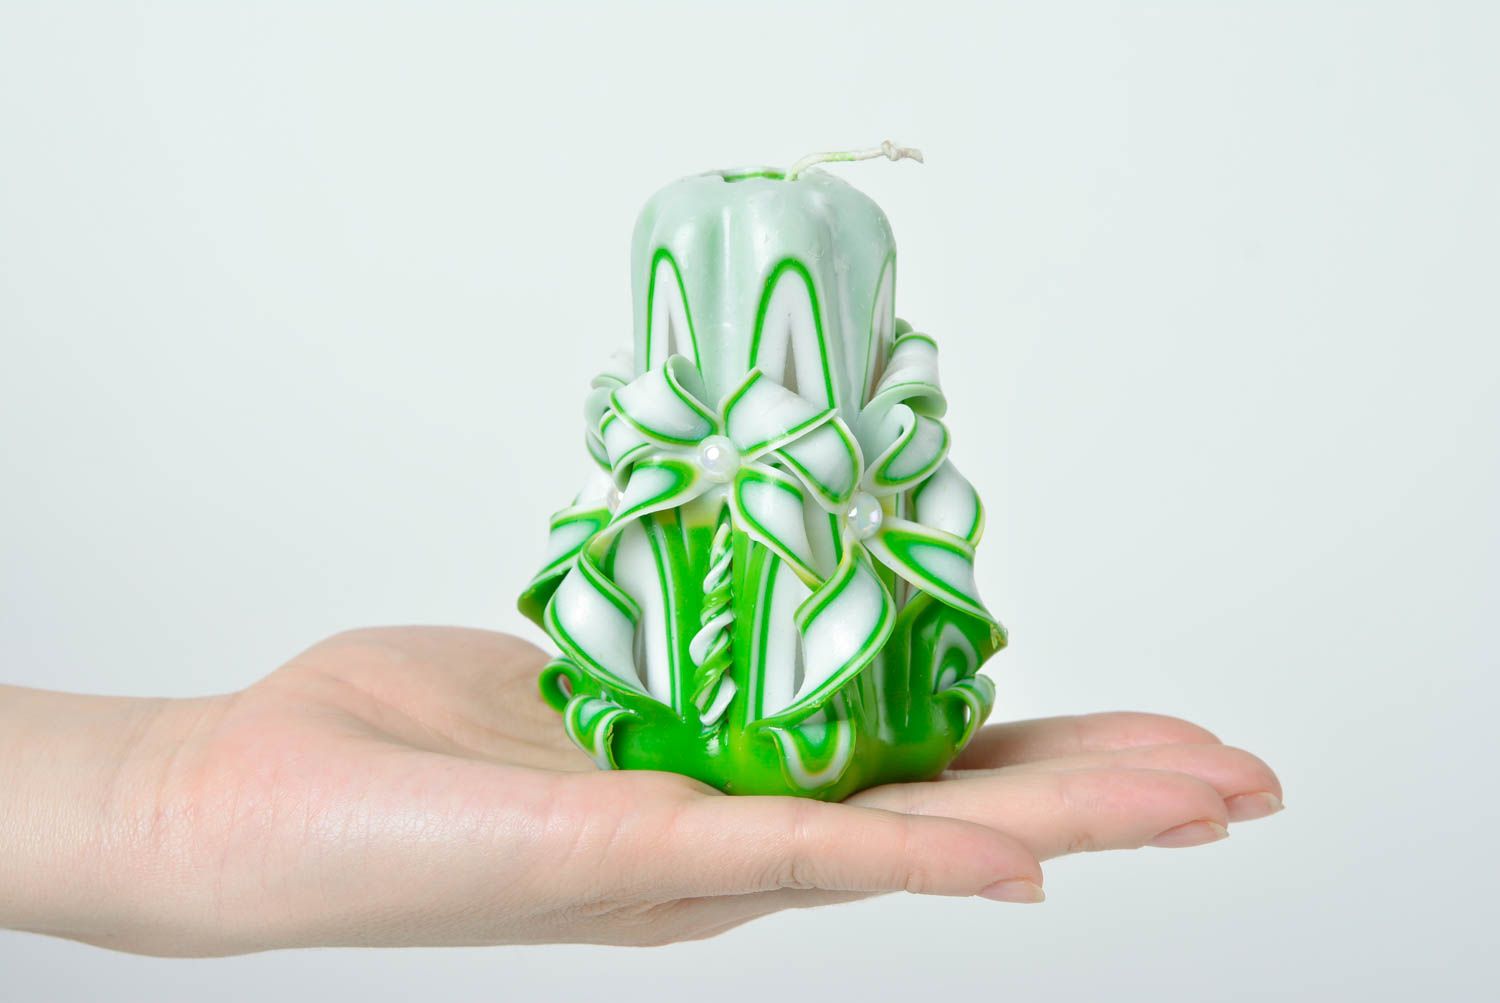 Парафиновая свеча ручной работы декорированная в технике ручной резьбы зеленая фото 4